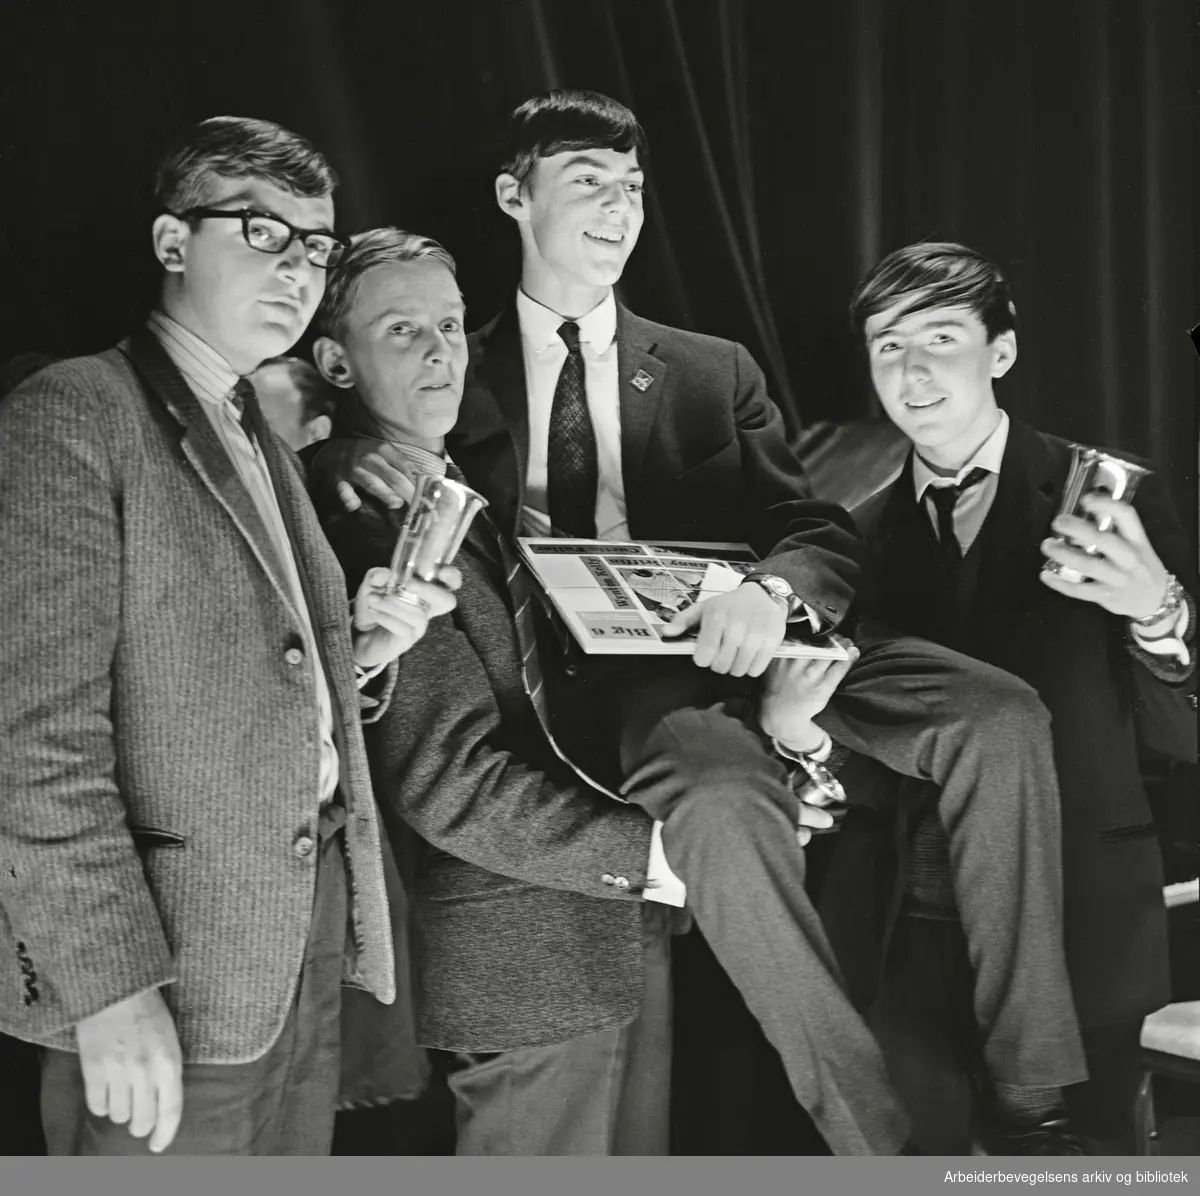 Vinnerne av NM i jazz for amatører 1962; Jan Garbareks kvartett. Fra venstre: Hans Marius Stormoen, Torgrim Sollid, Jan Garbarek og Morten Lassem. Klingenberg kino. 25. november 1962.